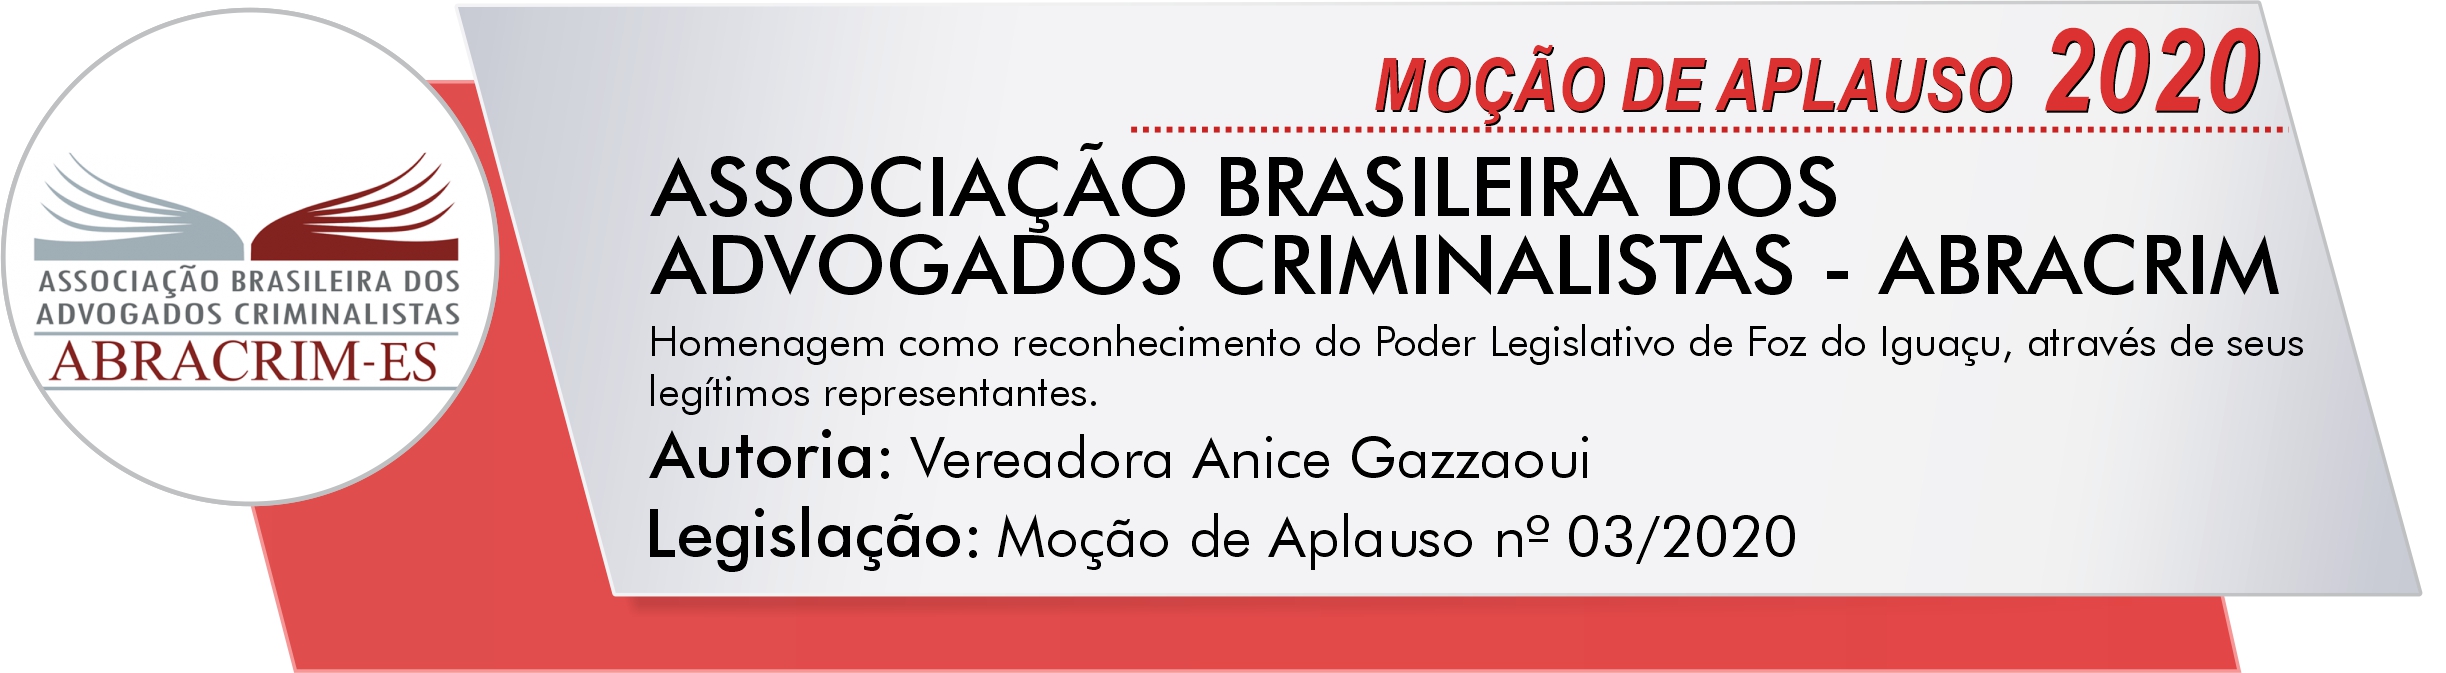 ASSOCIAÇÃO BRASILEIRA DOS ADVOGADOS CRIMINALISTAS - ABRACRIM